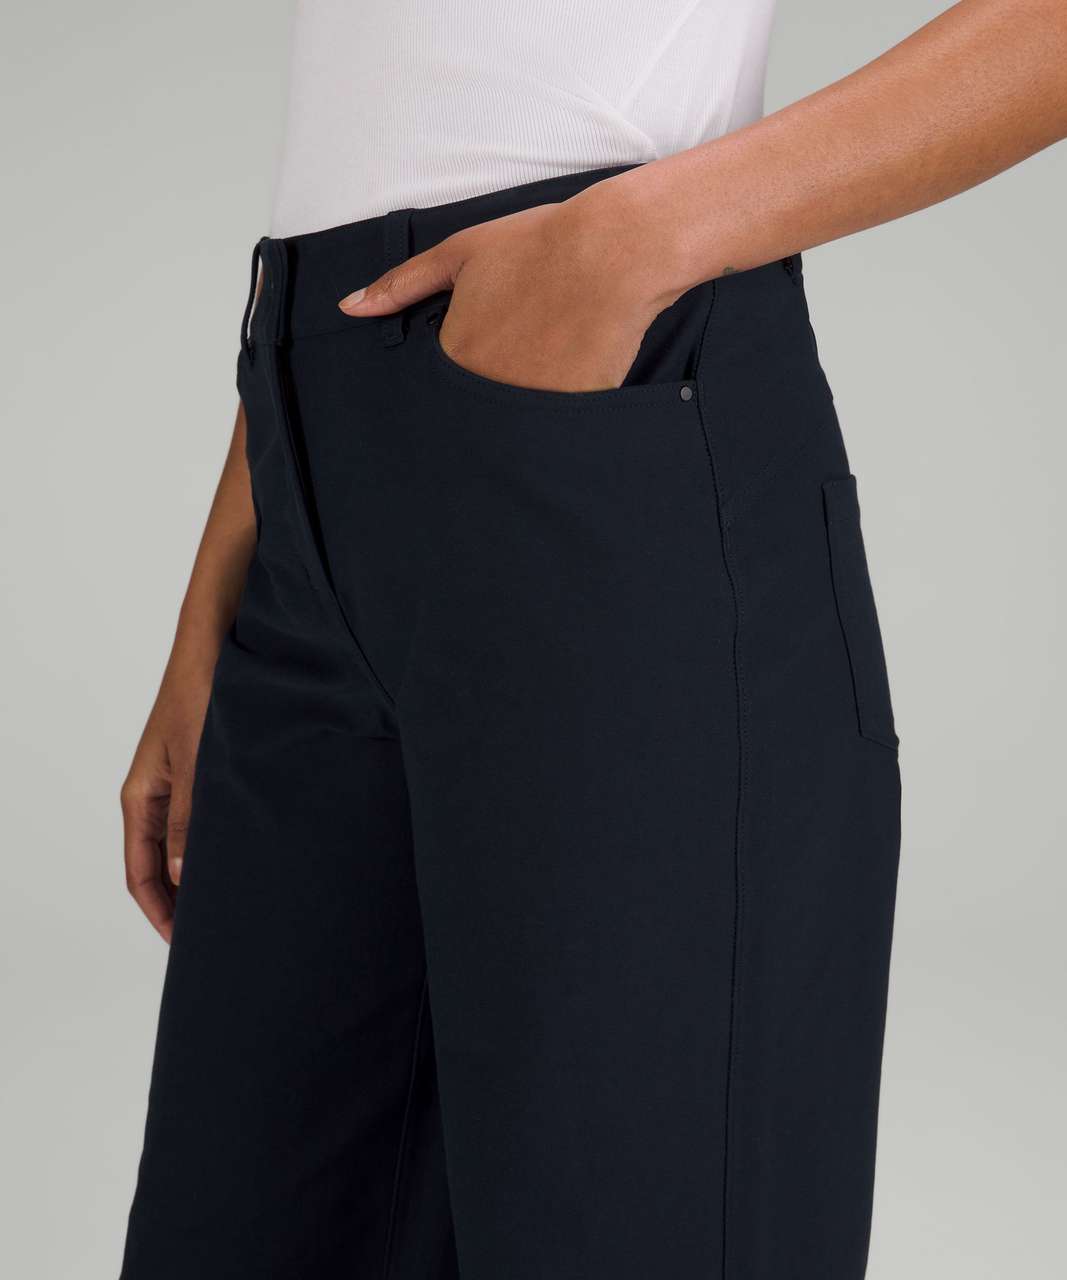 Lululemon City Sleek 5 Pocket High-Rise Wide-Leg Pant Full Length *Light Utilitech - True Navy